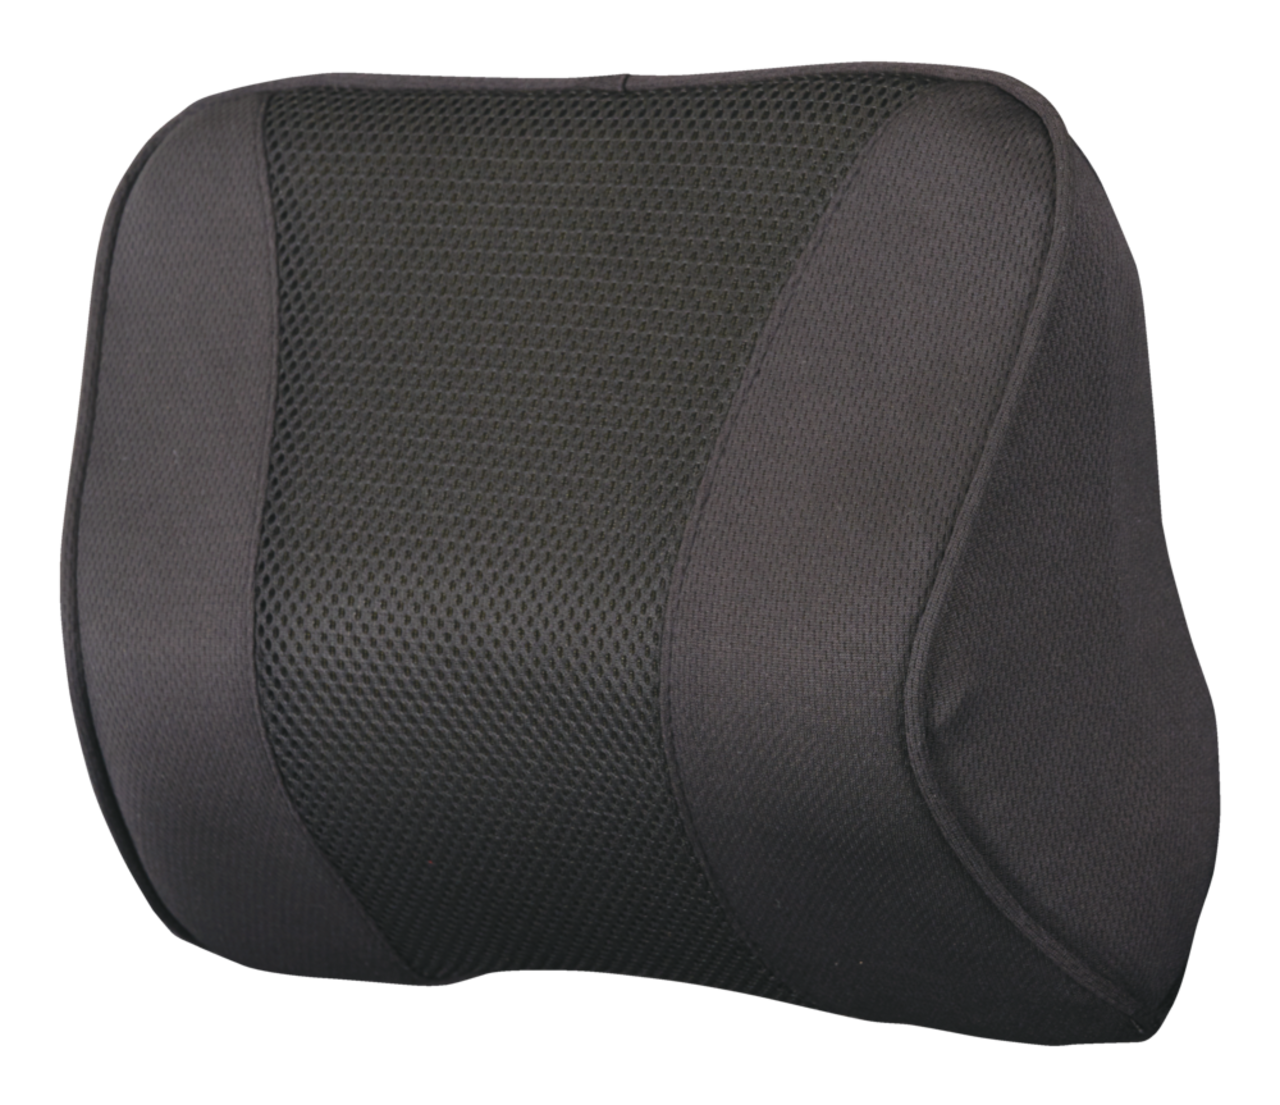 Neck cushion headrest retrofit headrest for sofa couch armchair grey